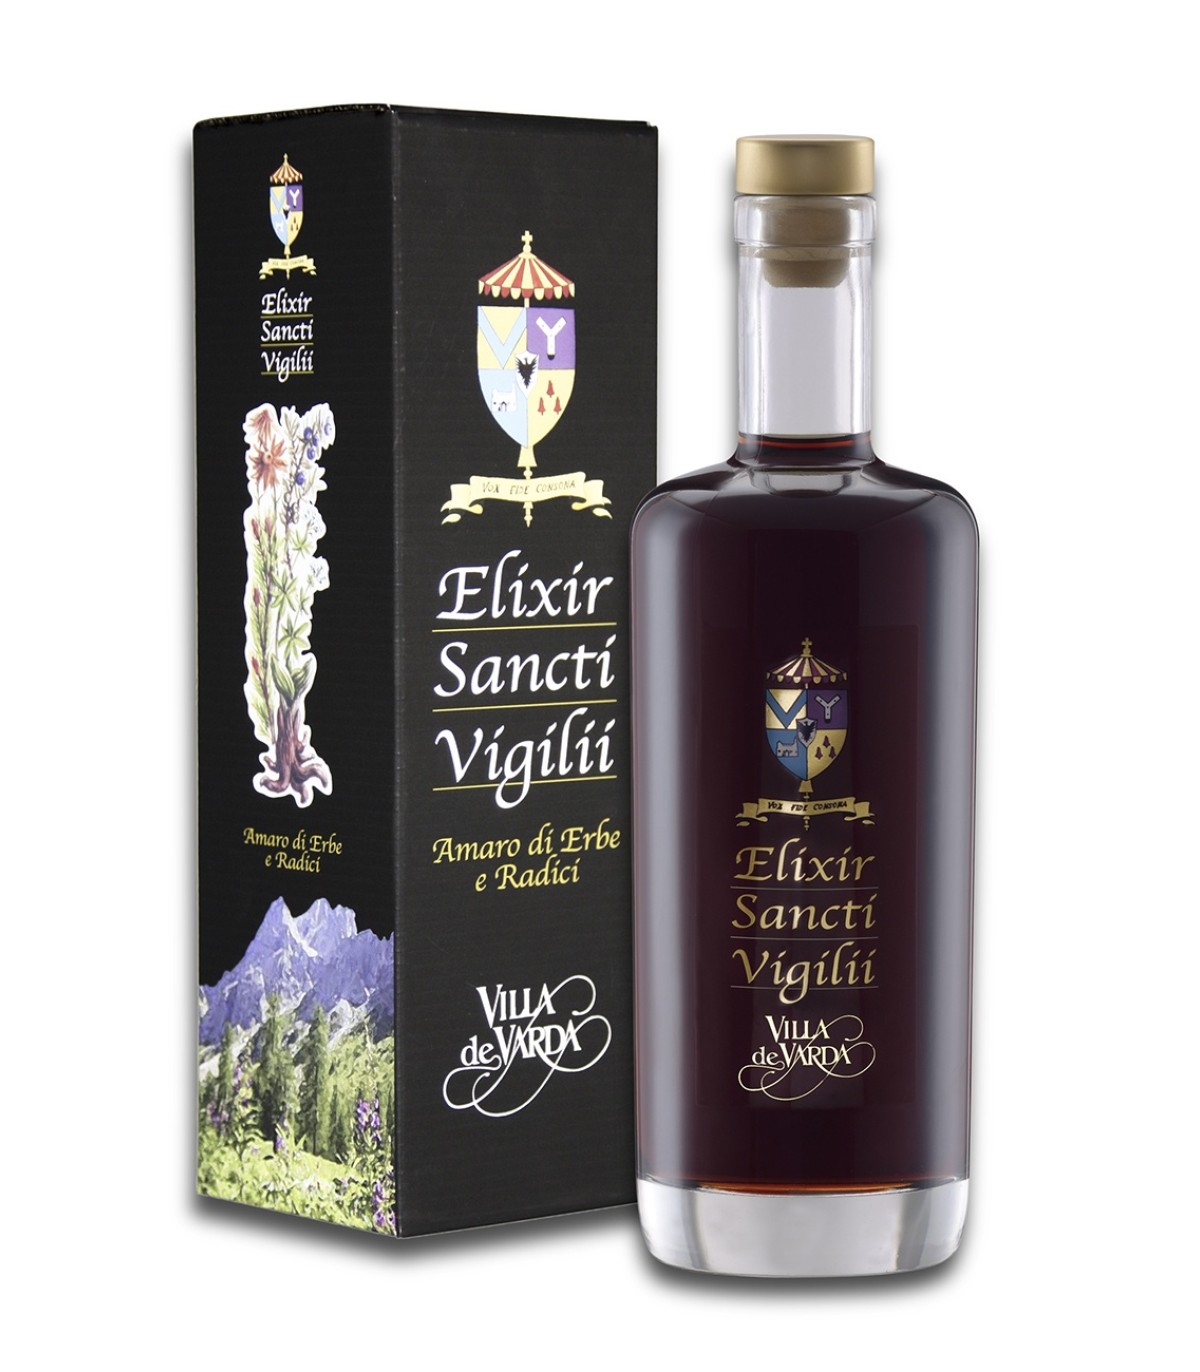 Elixir Sancti Vigilii Amaro di Erbe e Radici 70cl - Villa de Varda